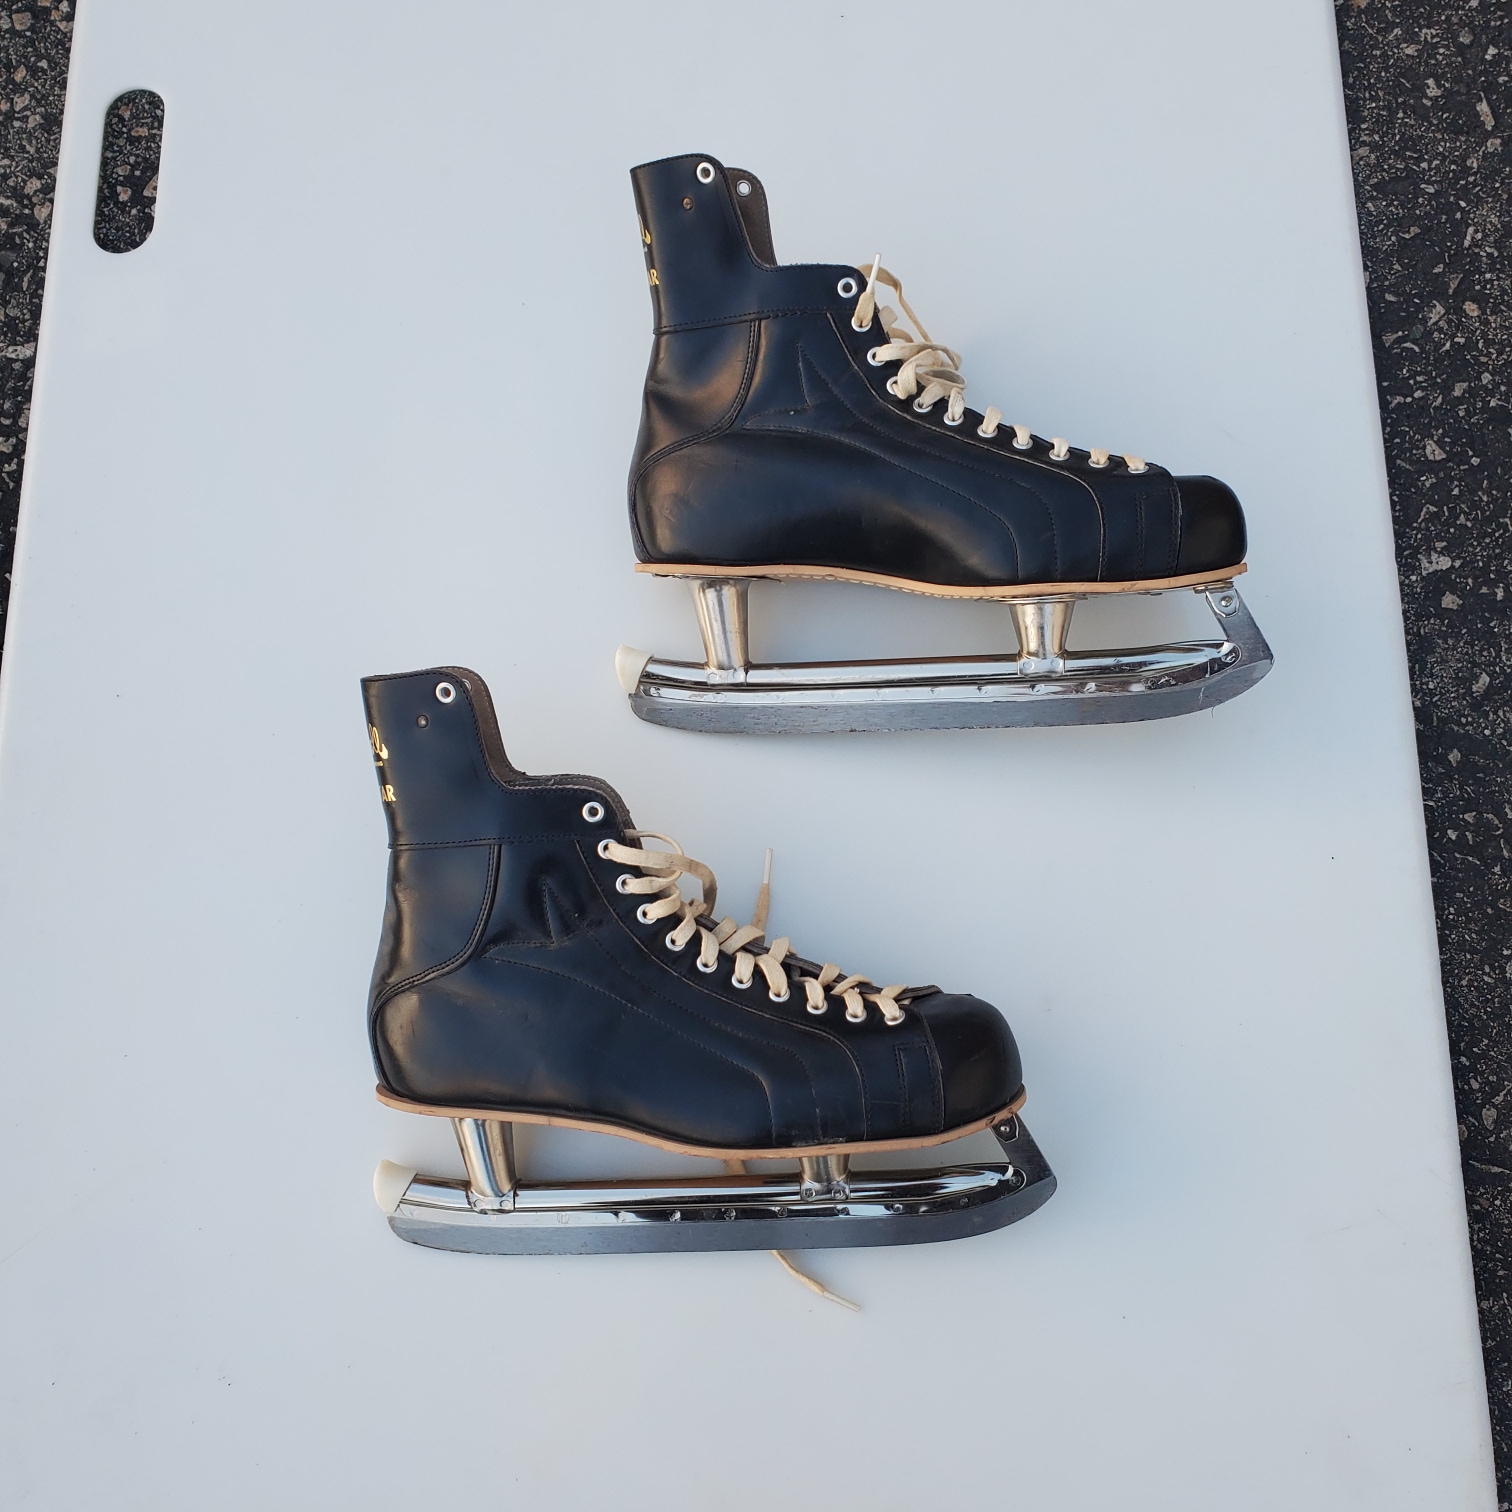 Used Senior Hockey Skates 11